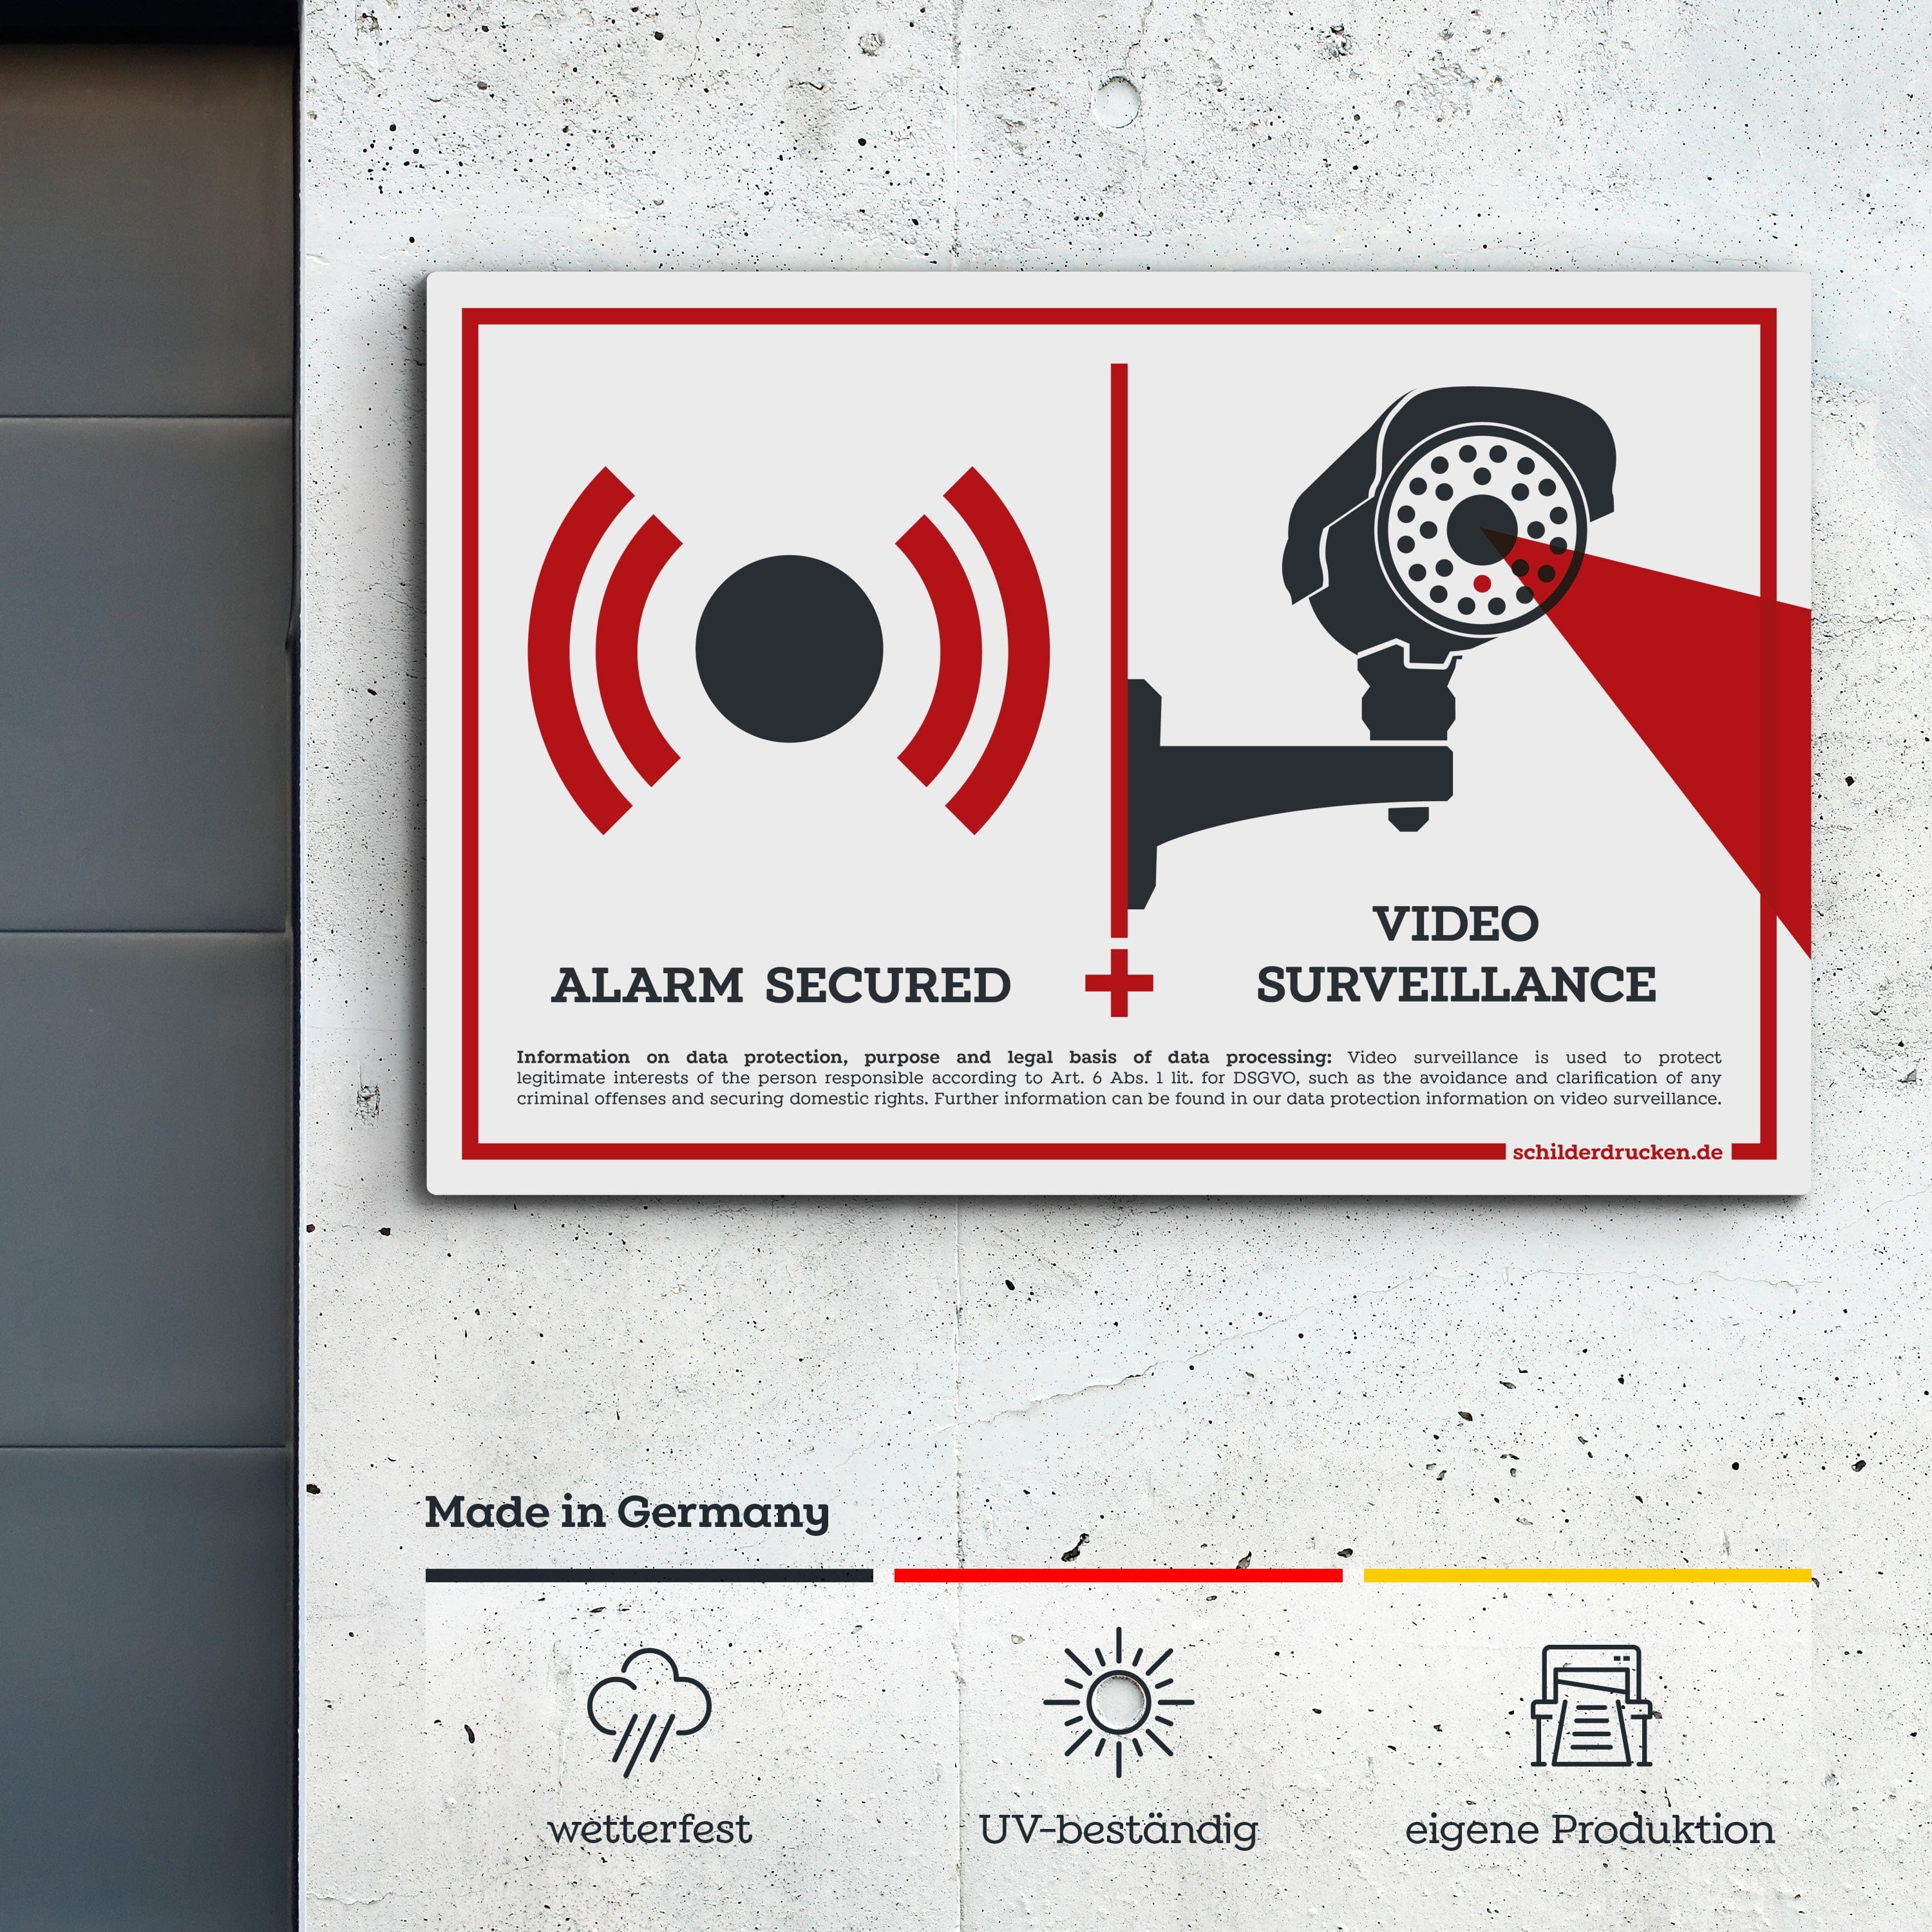 alarm secured and video surveillance! 10 x 15 cm / weiss / Alu-Dibond online drucken lassen bei schilderdrucken.de